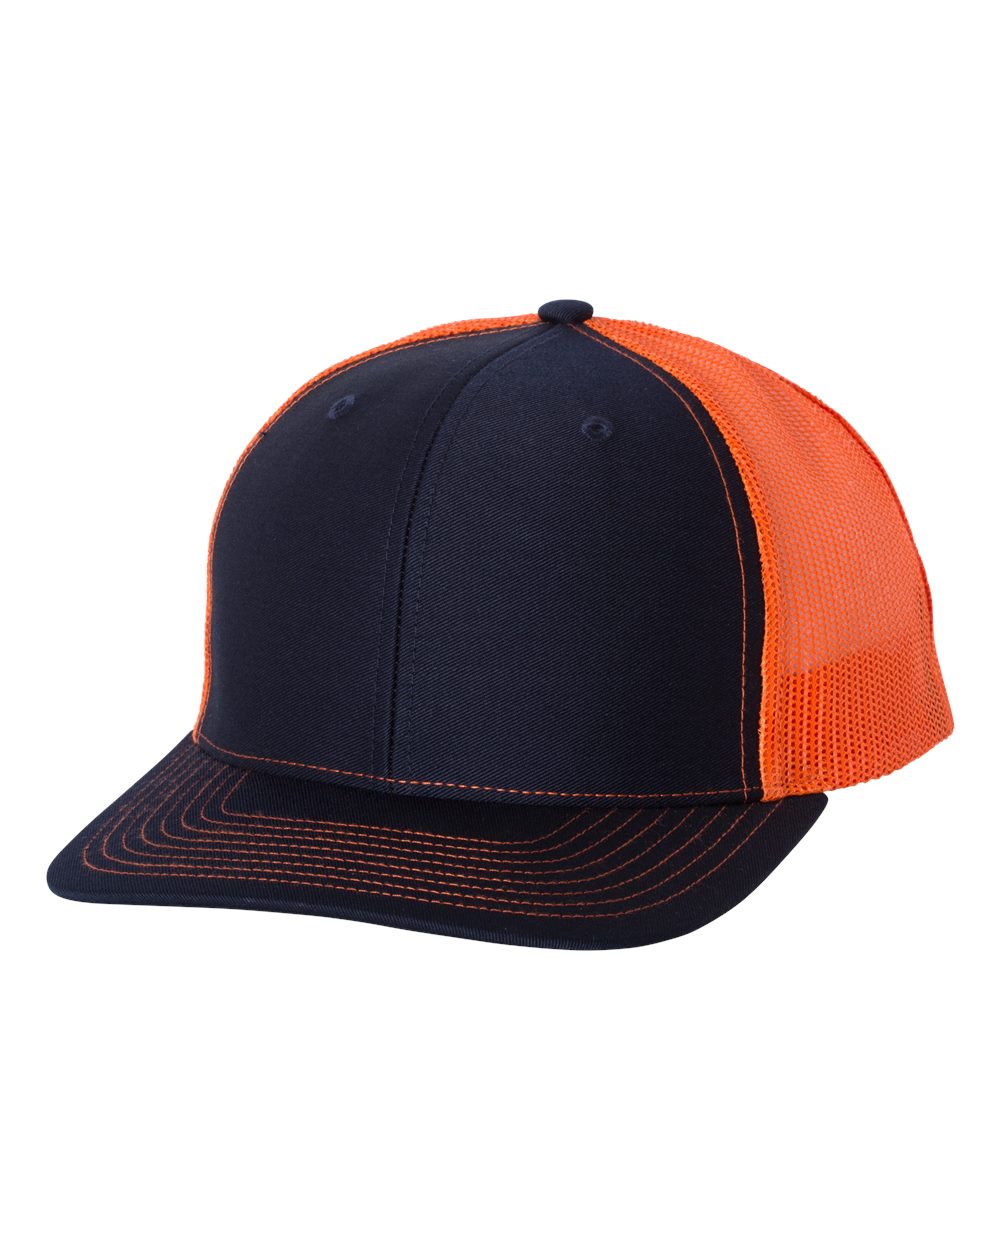 richardson cap navy orange